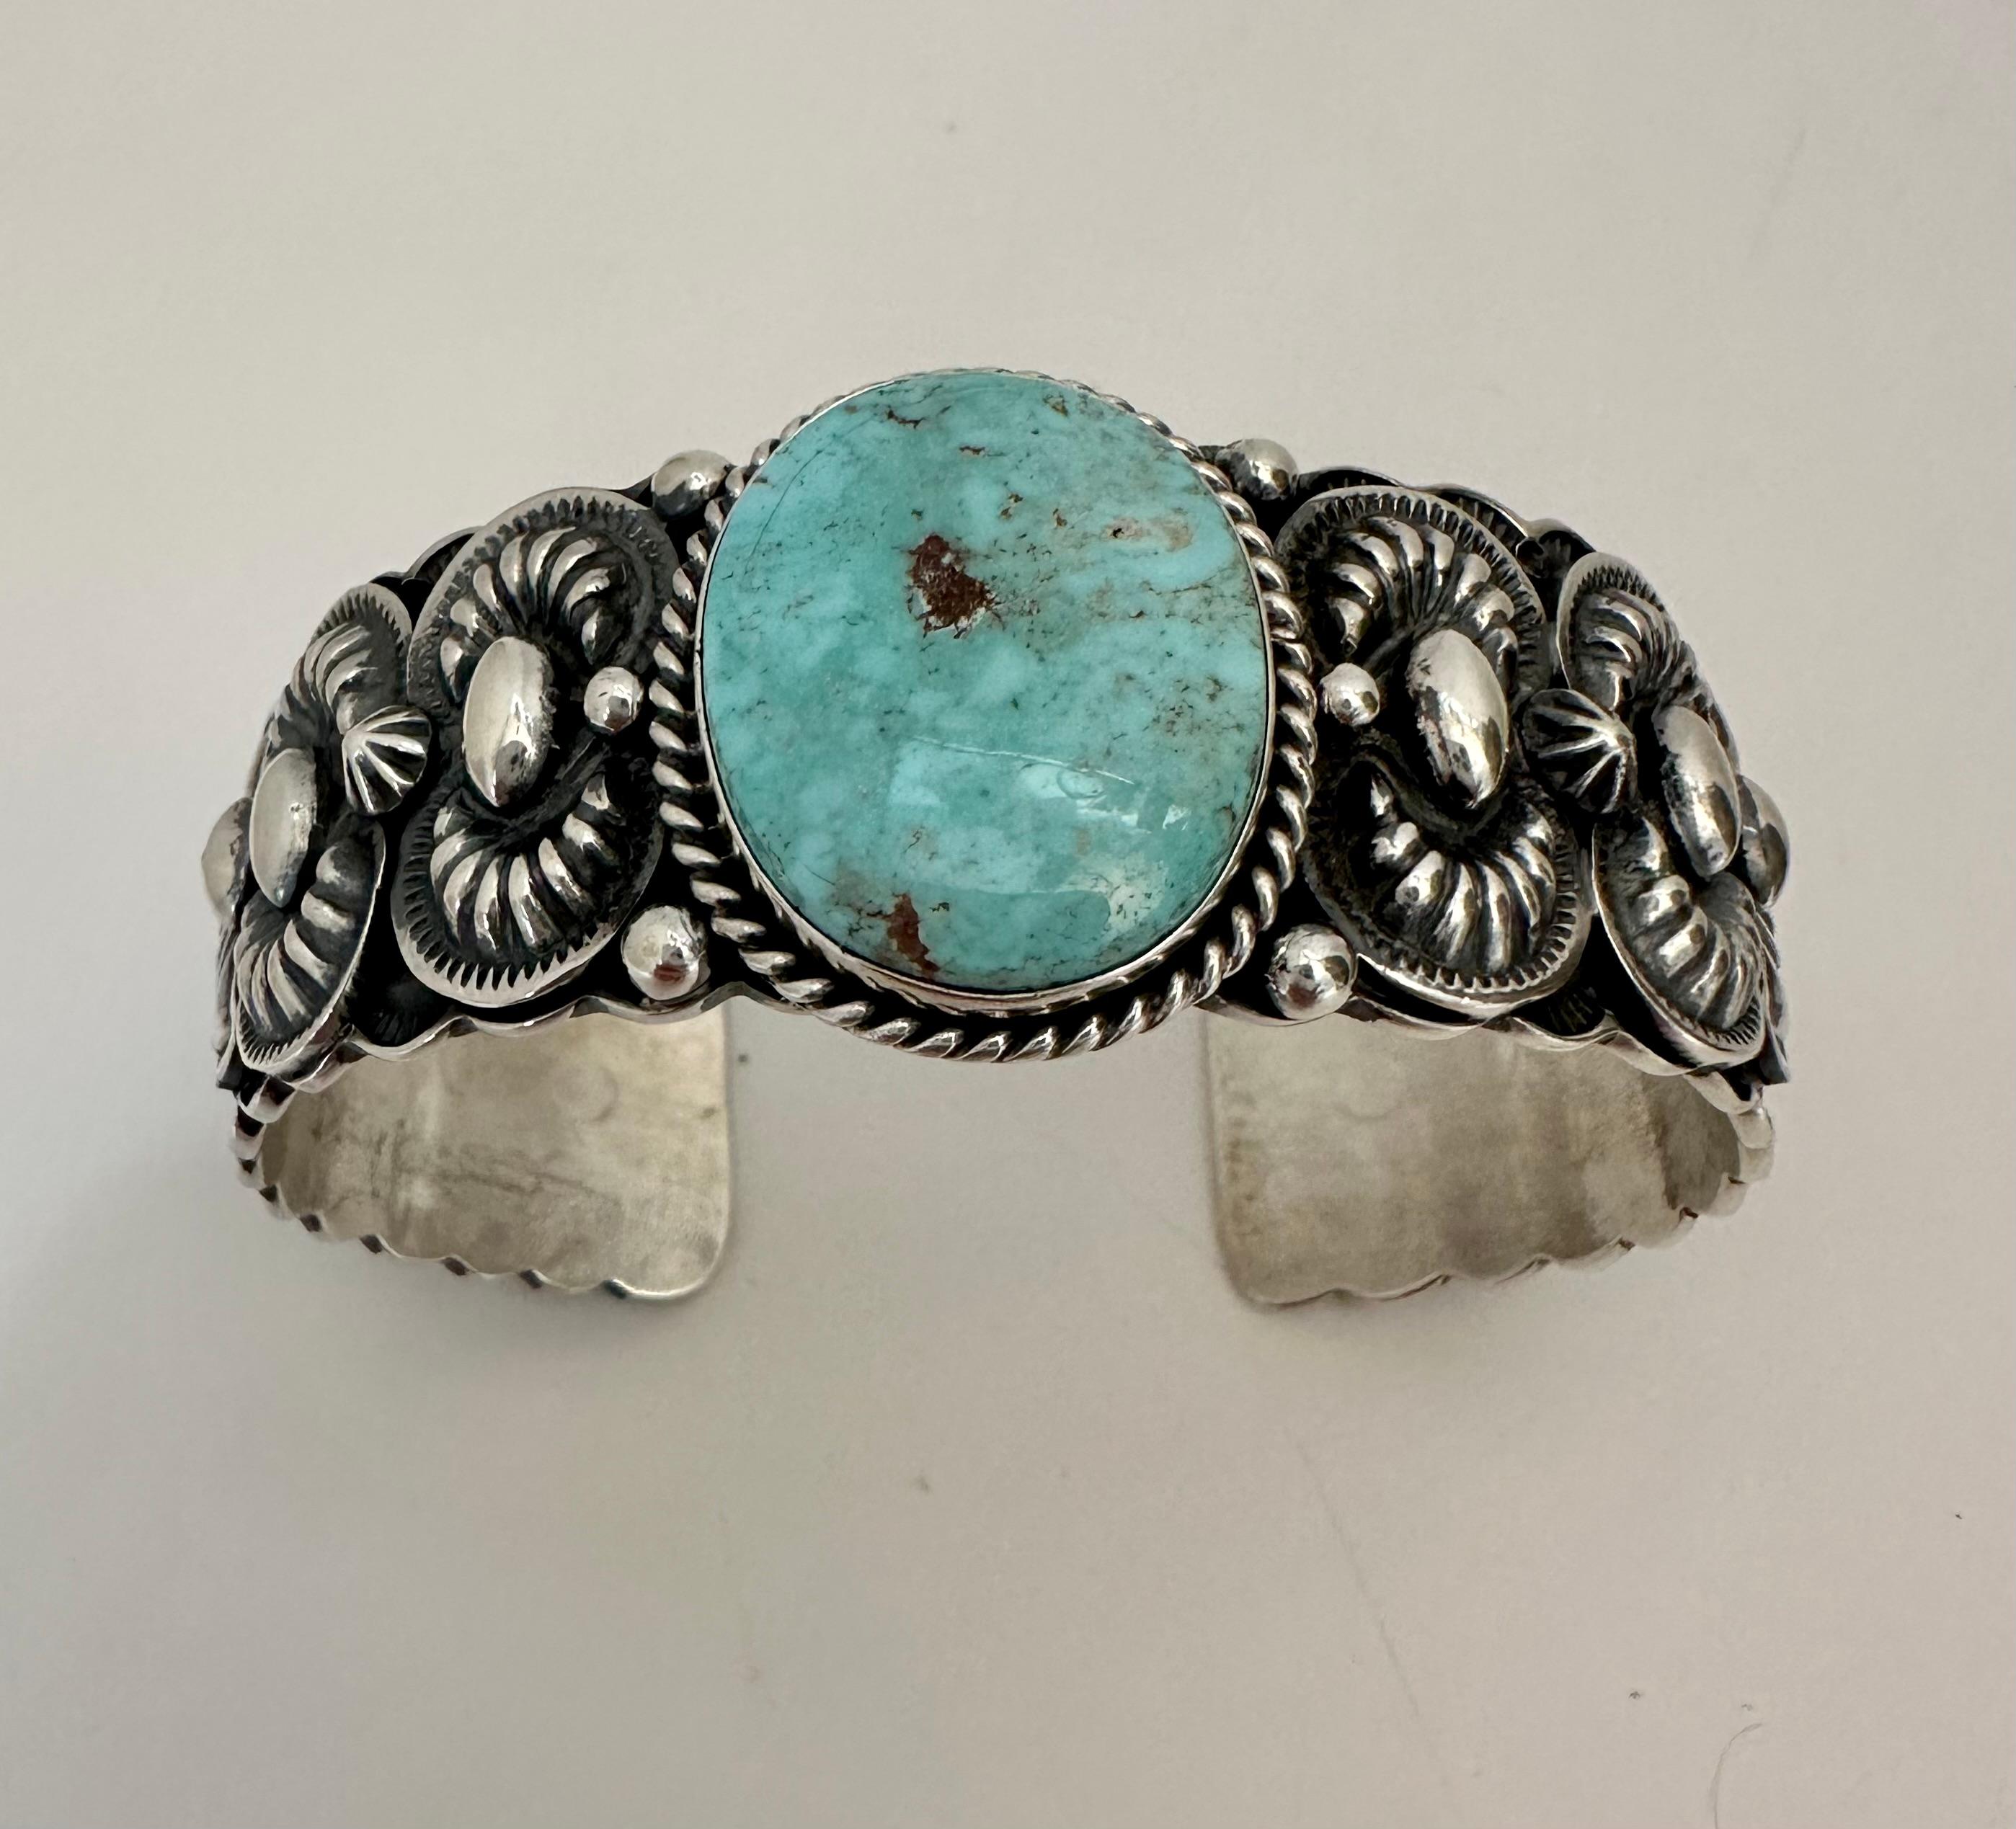 dry creek turquoise bracelet